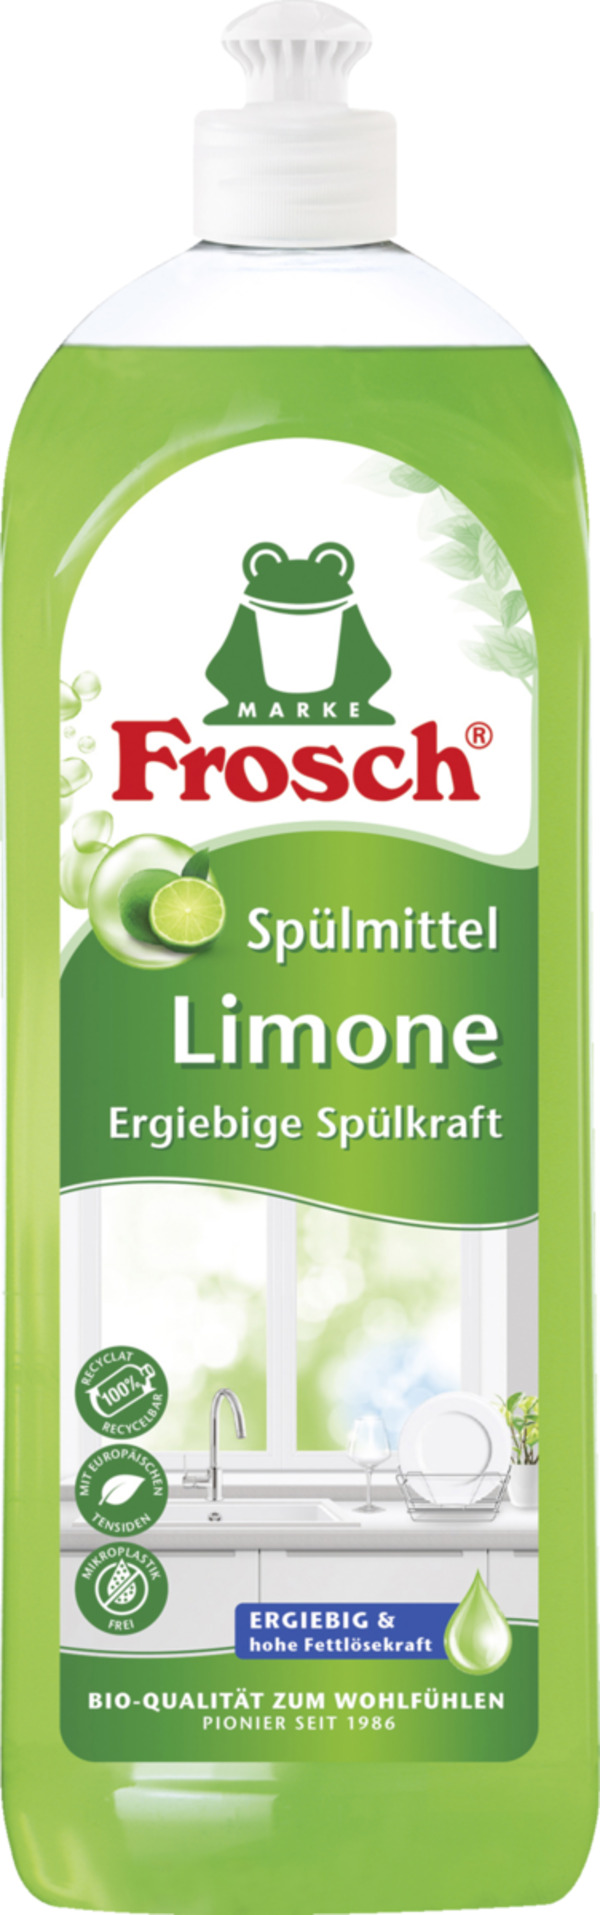 Bild 1 von Frosch Limone Spülmittel